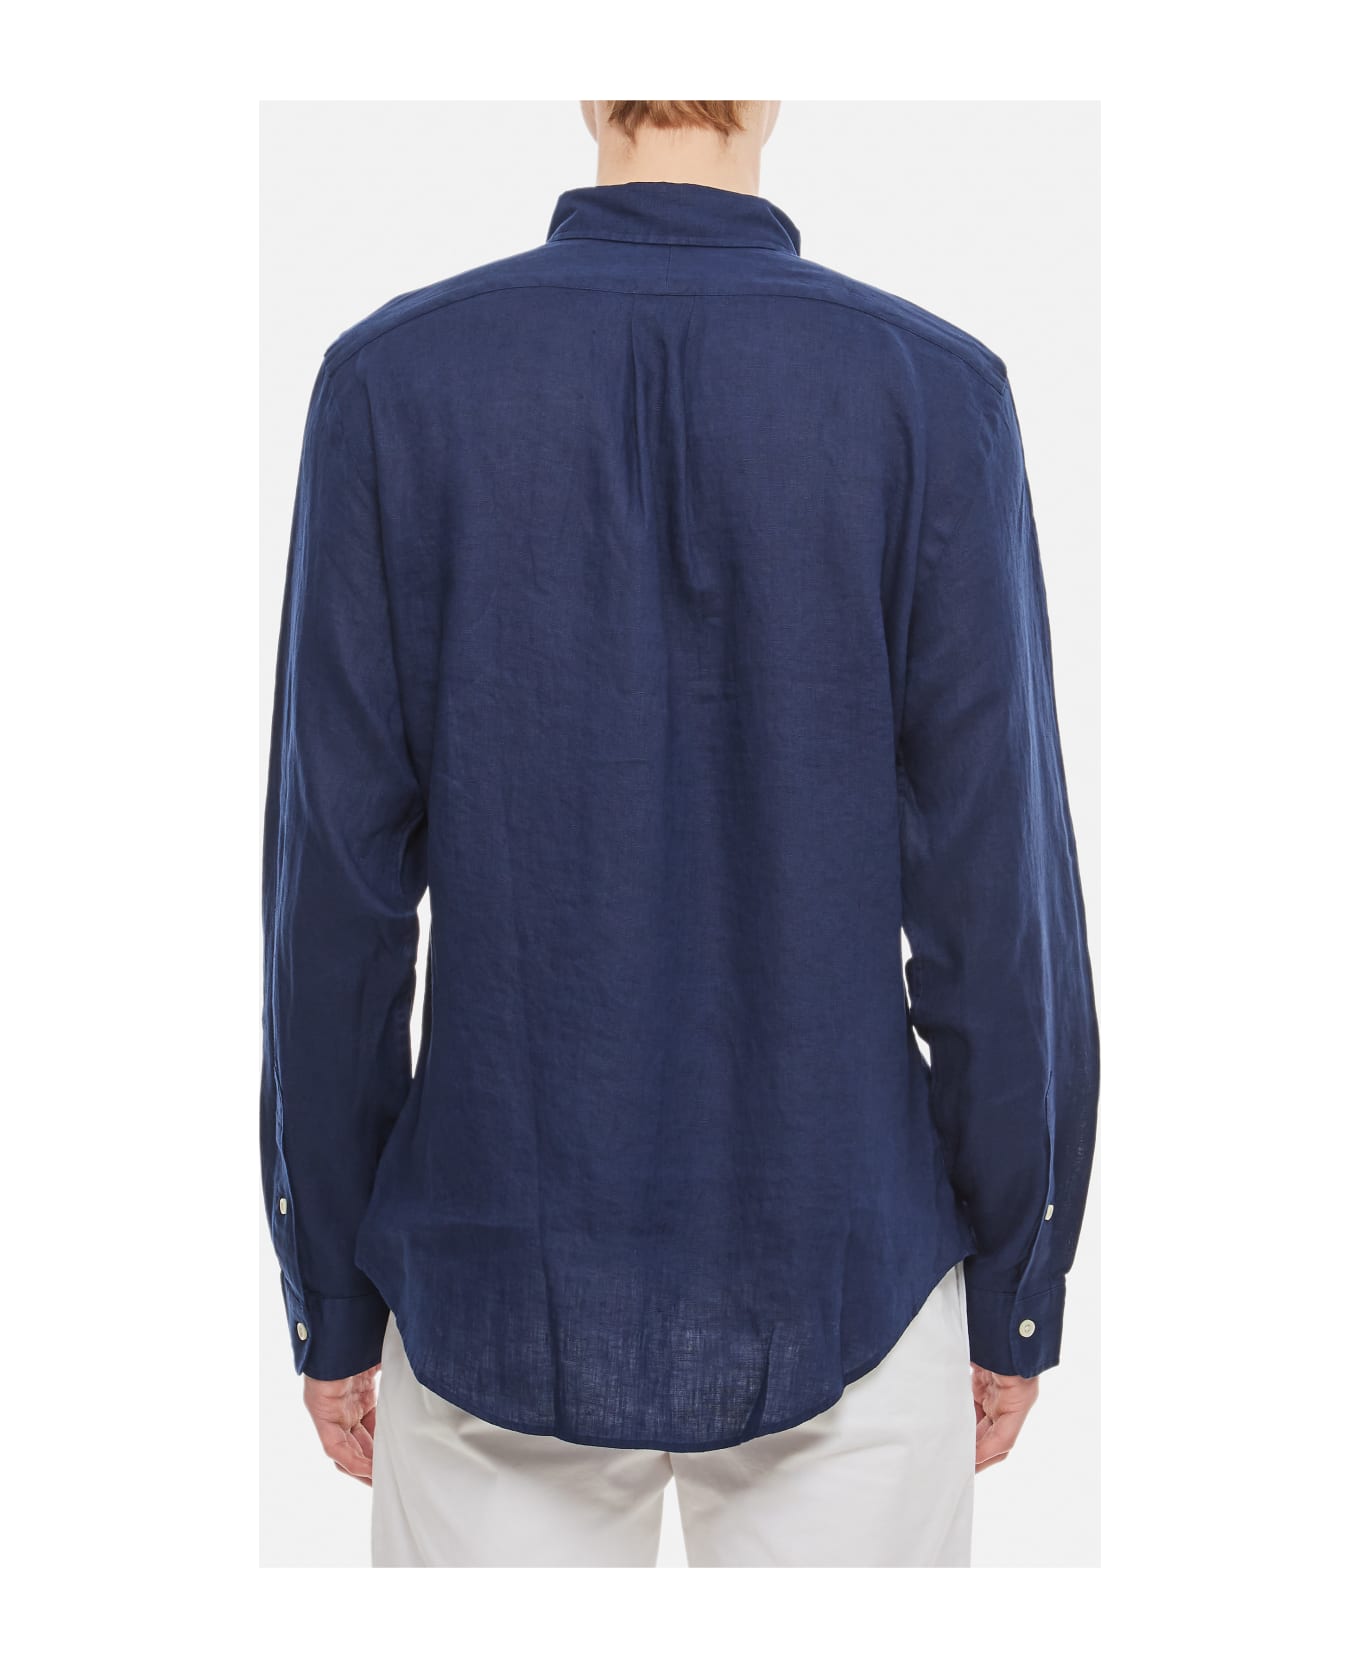 Ralph Lauren Long Sleeve-sport Shirt - NEWPORT NAVY